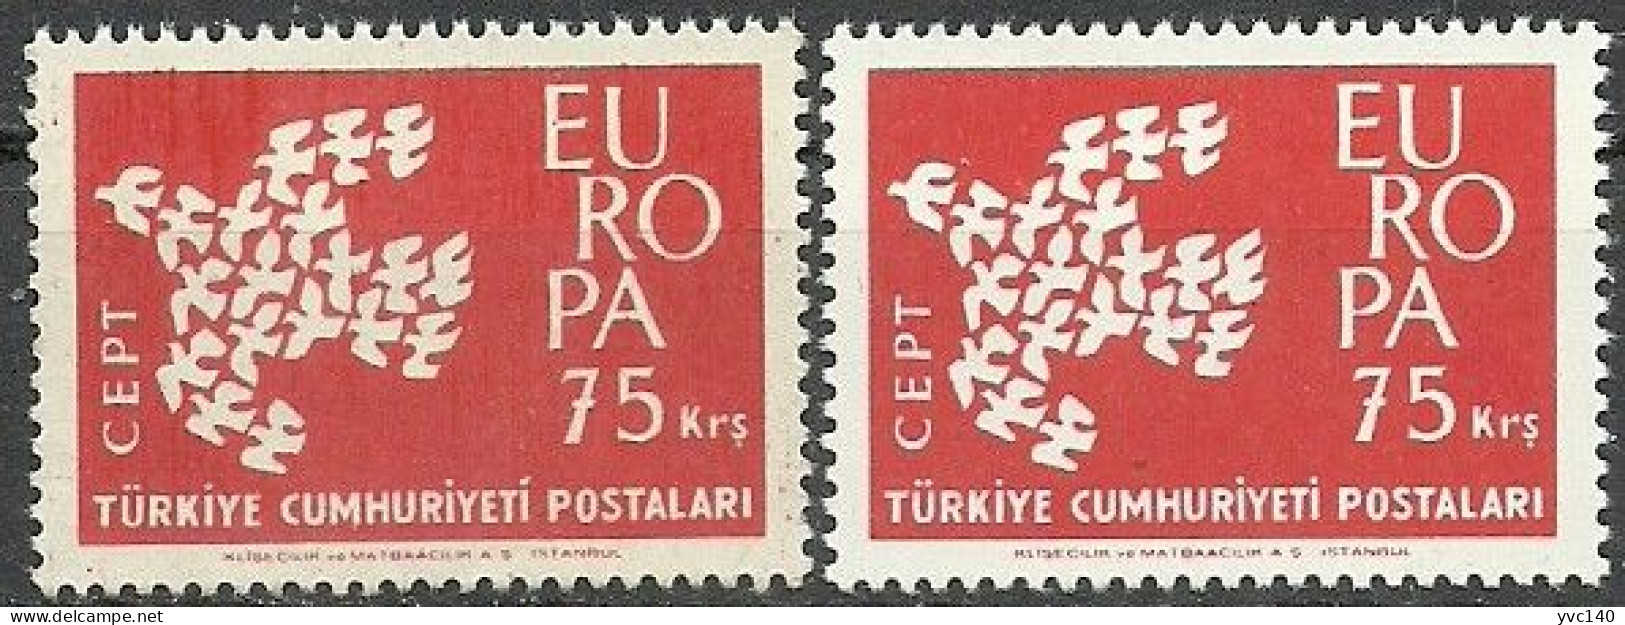 Turkey; 1961 Europa CEPT 75 K. "Sloppy Print" - Ungebraucht